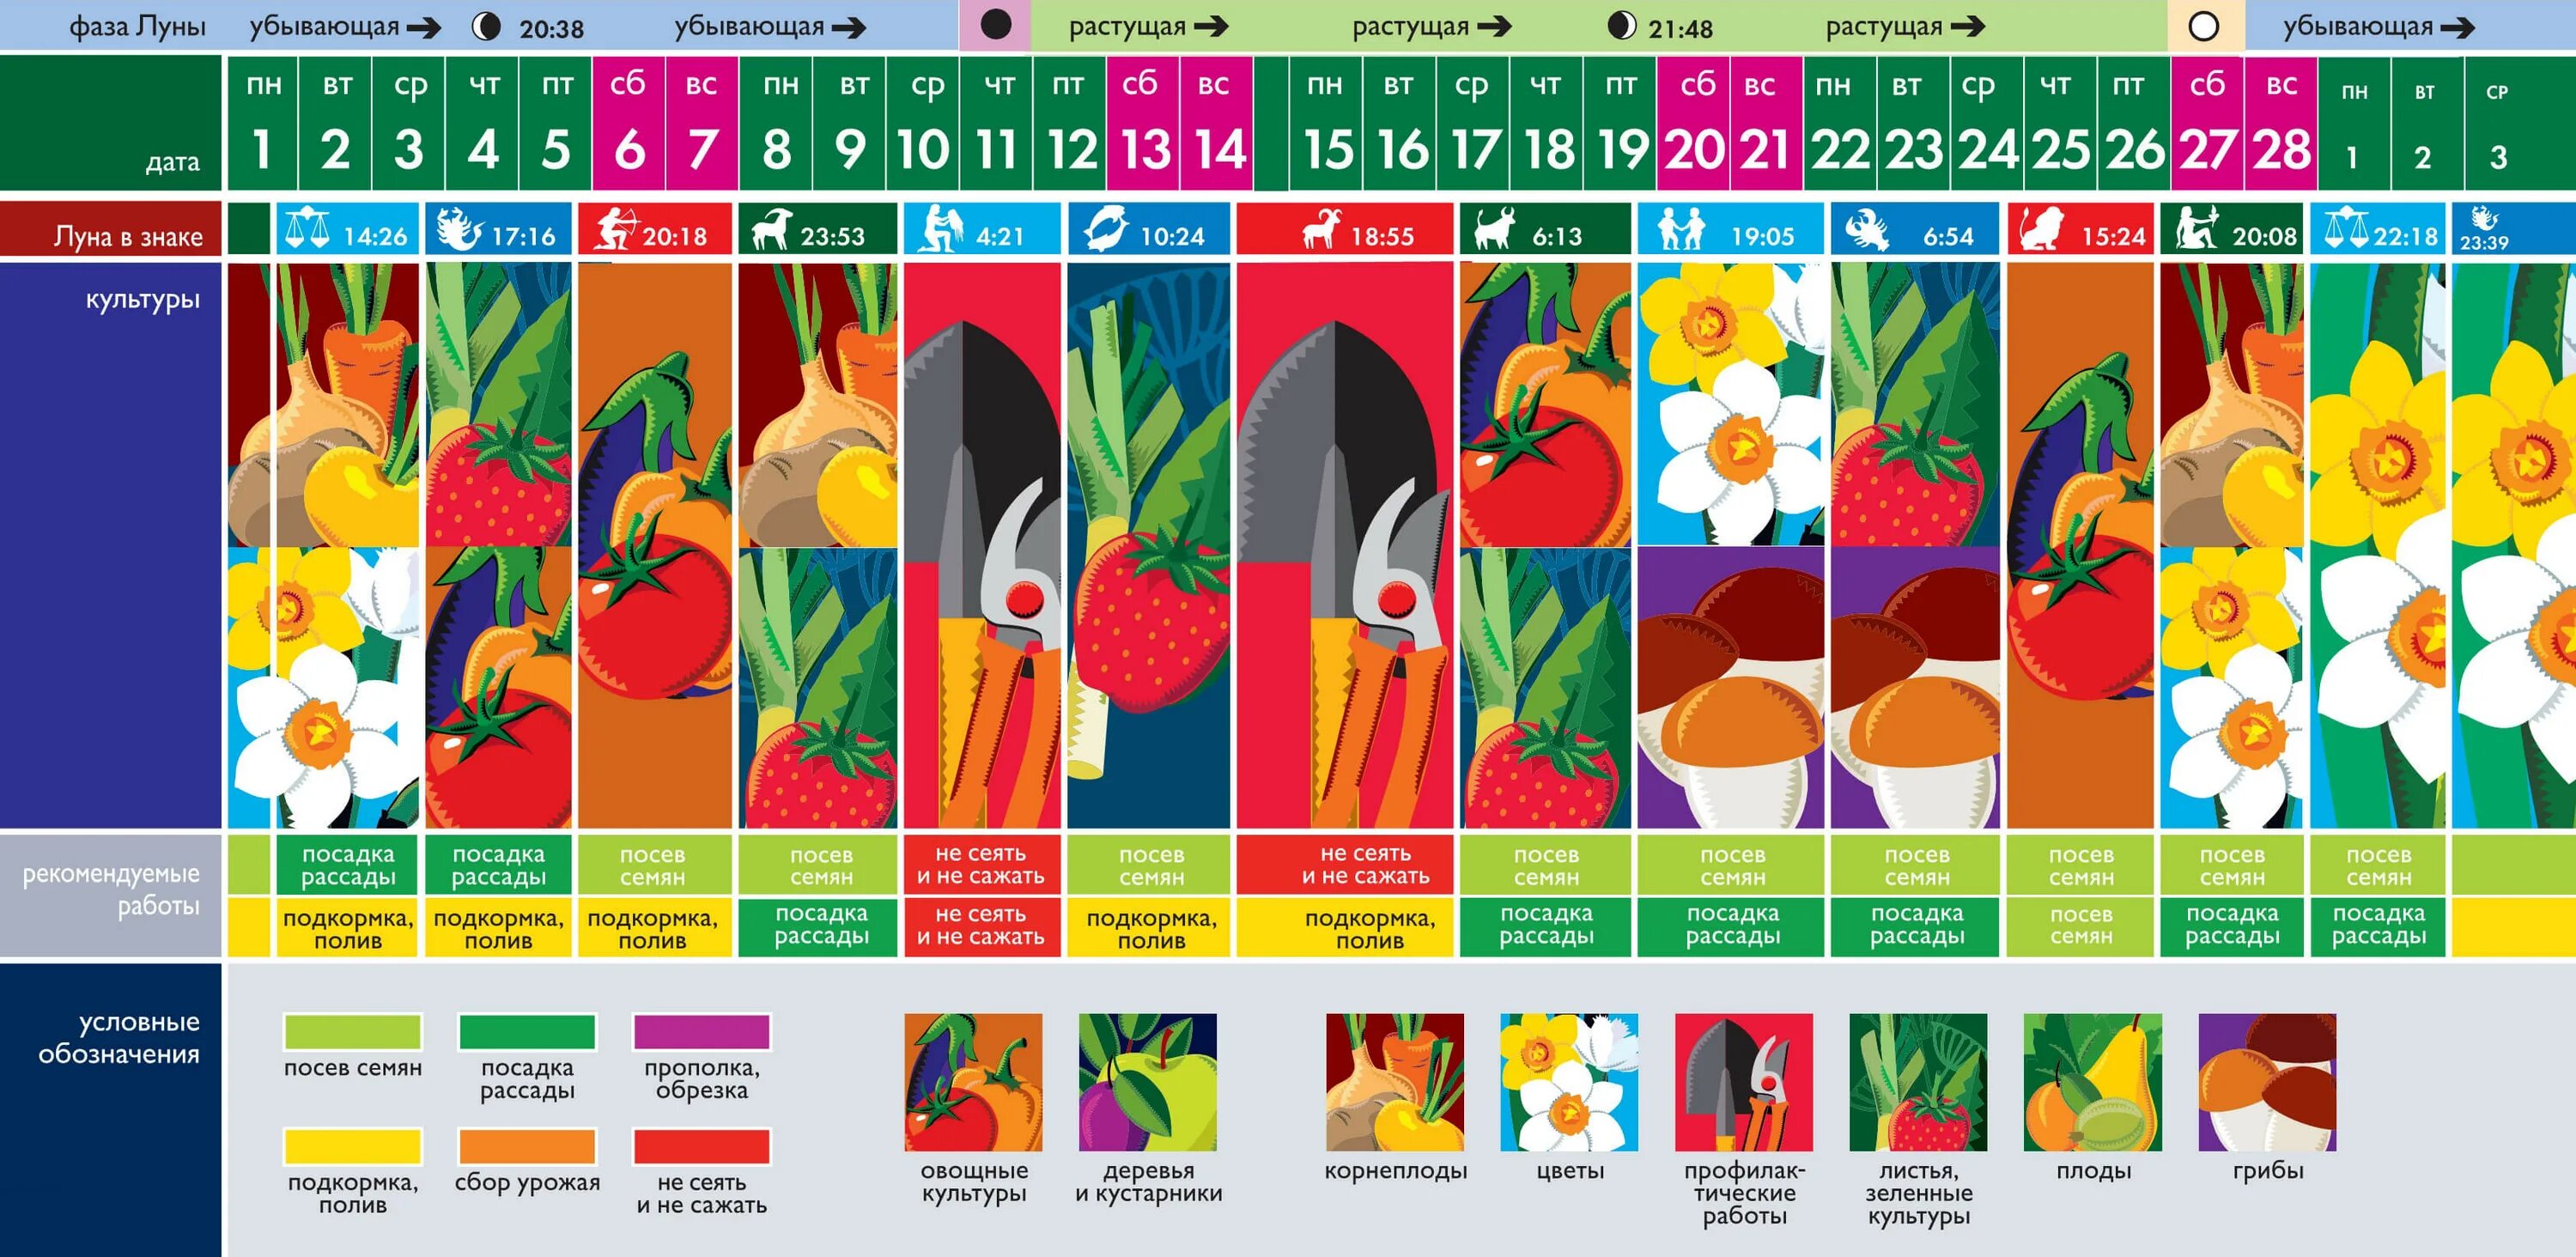 Посевной календарь на март месяц 2024г лунный. Календарь огородника на 2021 посадочный лунный. Лунный календарь на 2021 год садовода и огородника. Лунный посевной календарь садовода на 2021. Календарь садовода и огородника на 2021 год.